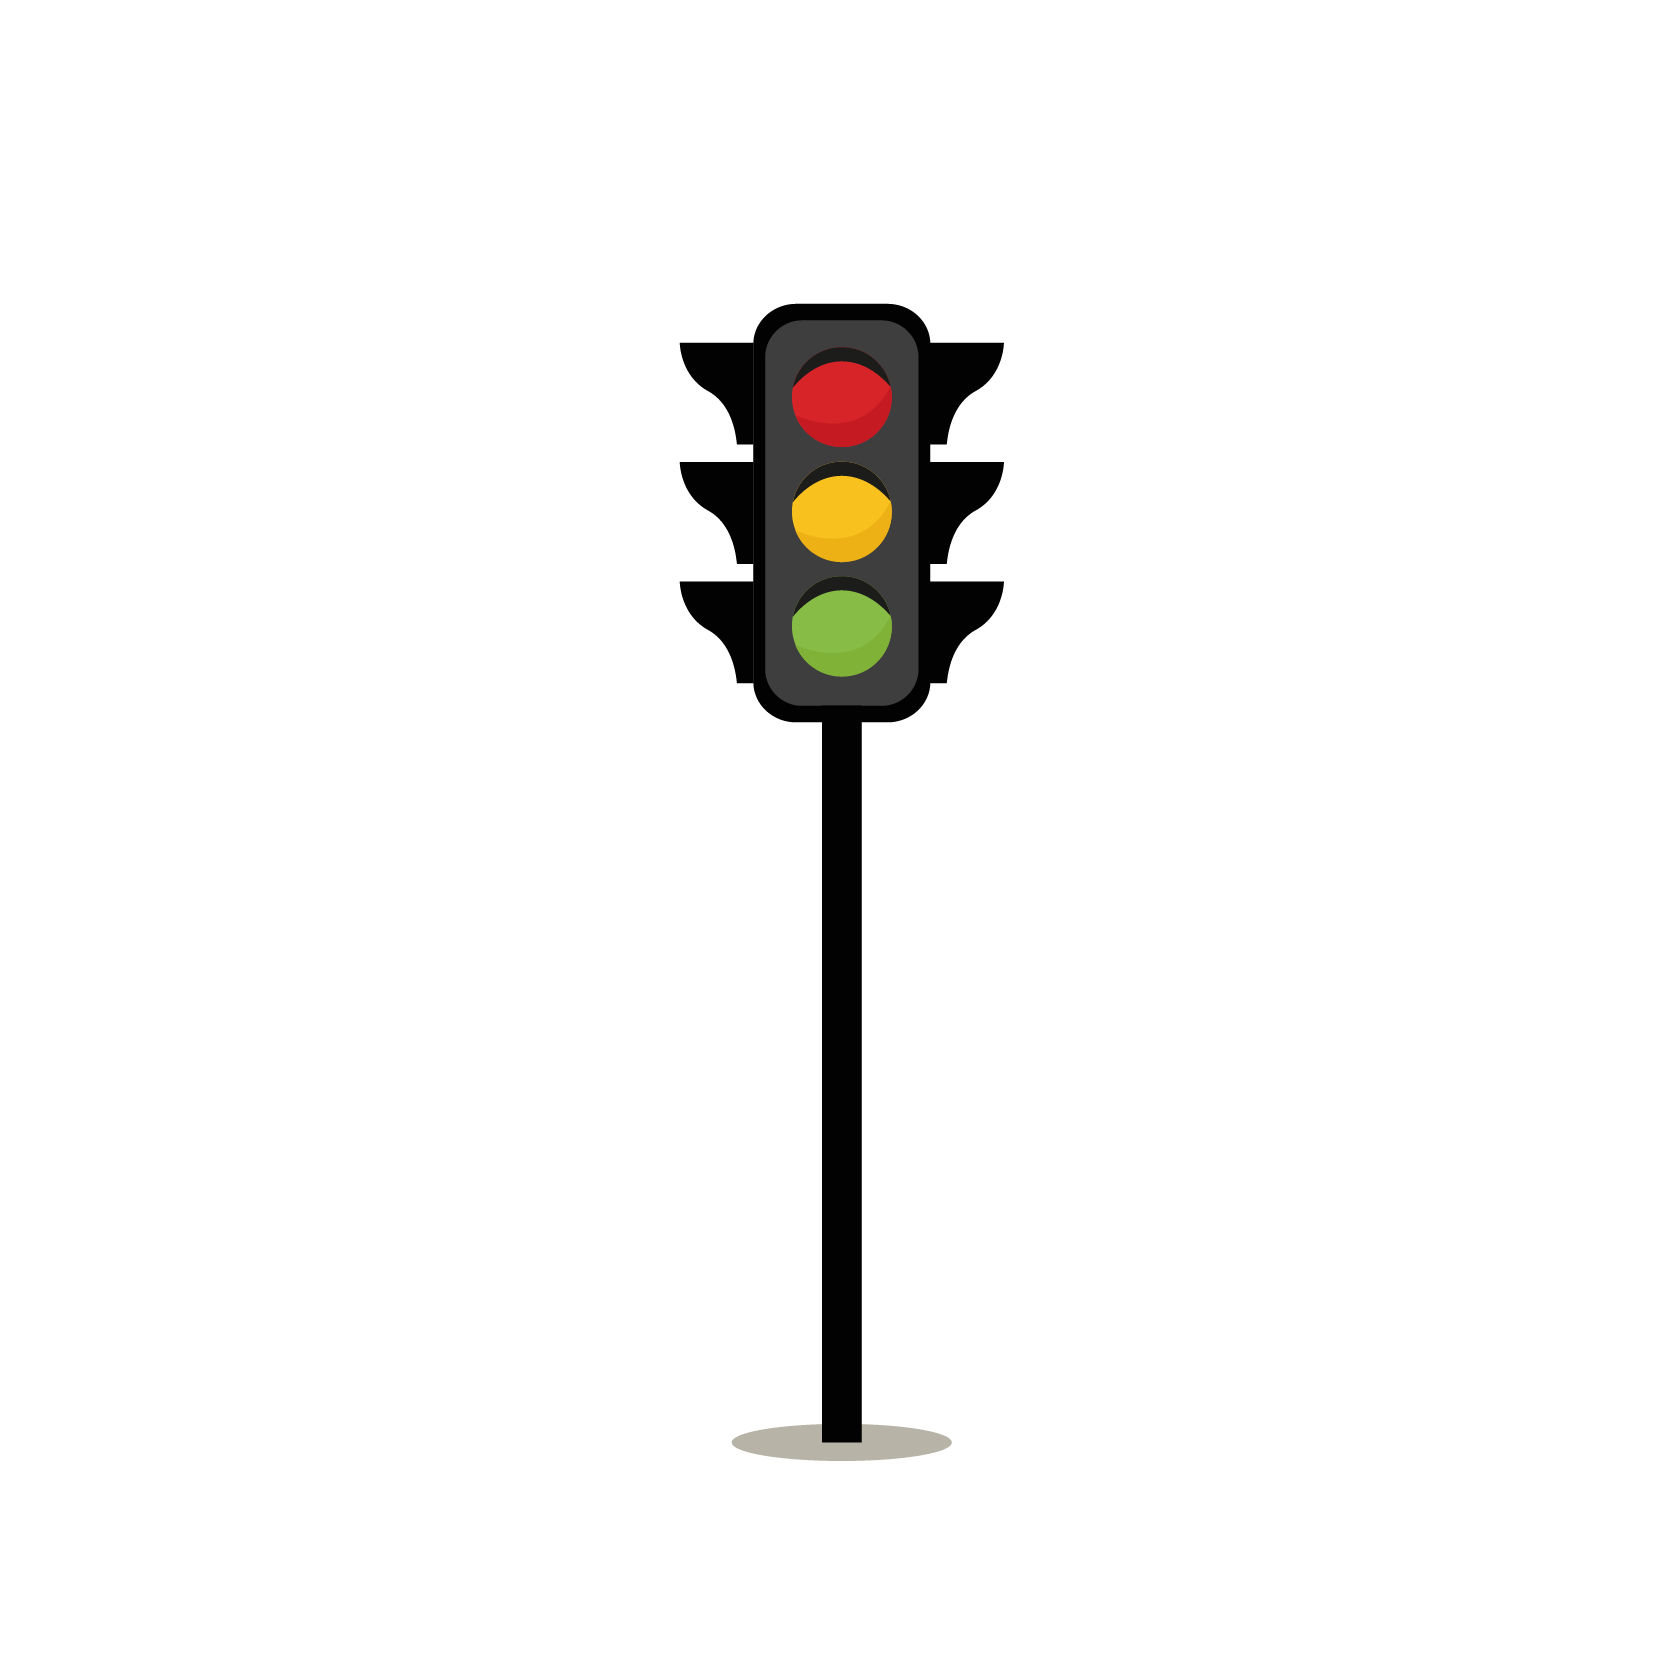 Download PNG image - Traffic Light Transparent Images PNG 